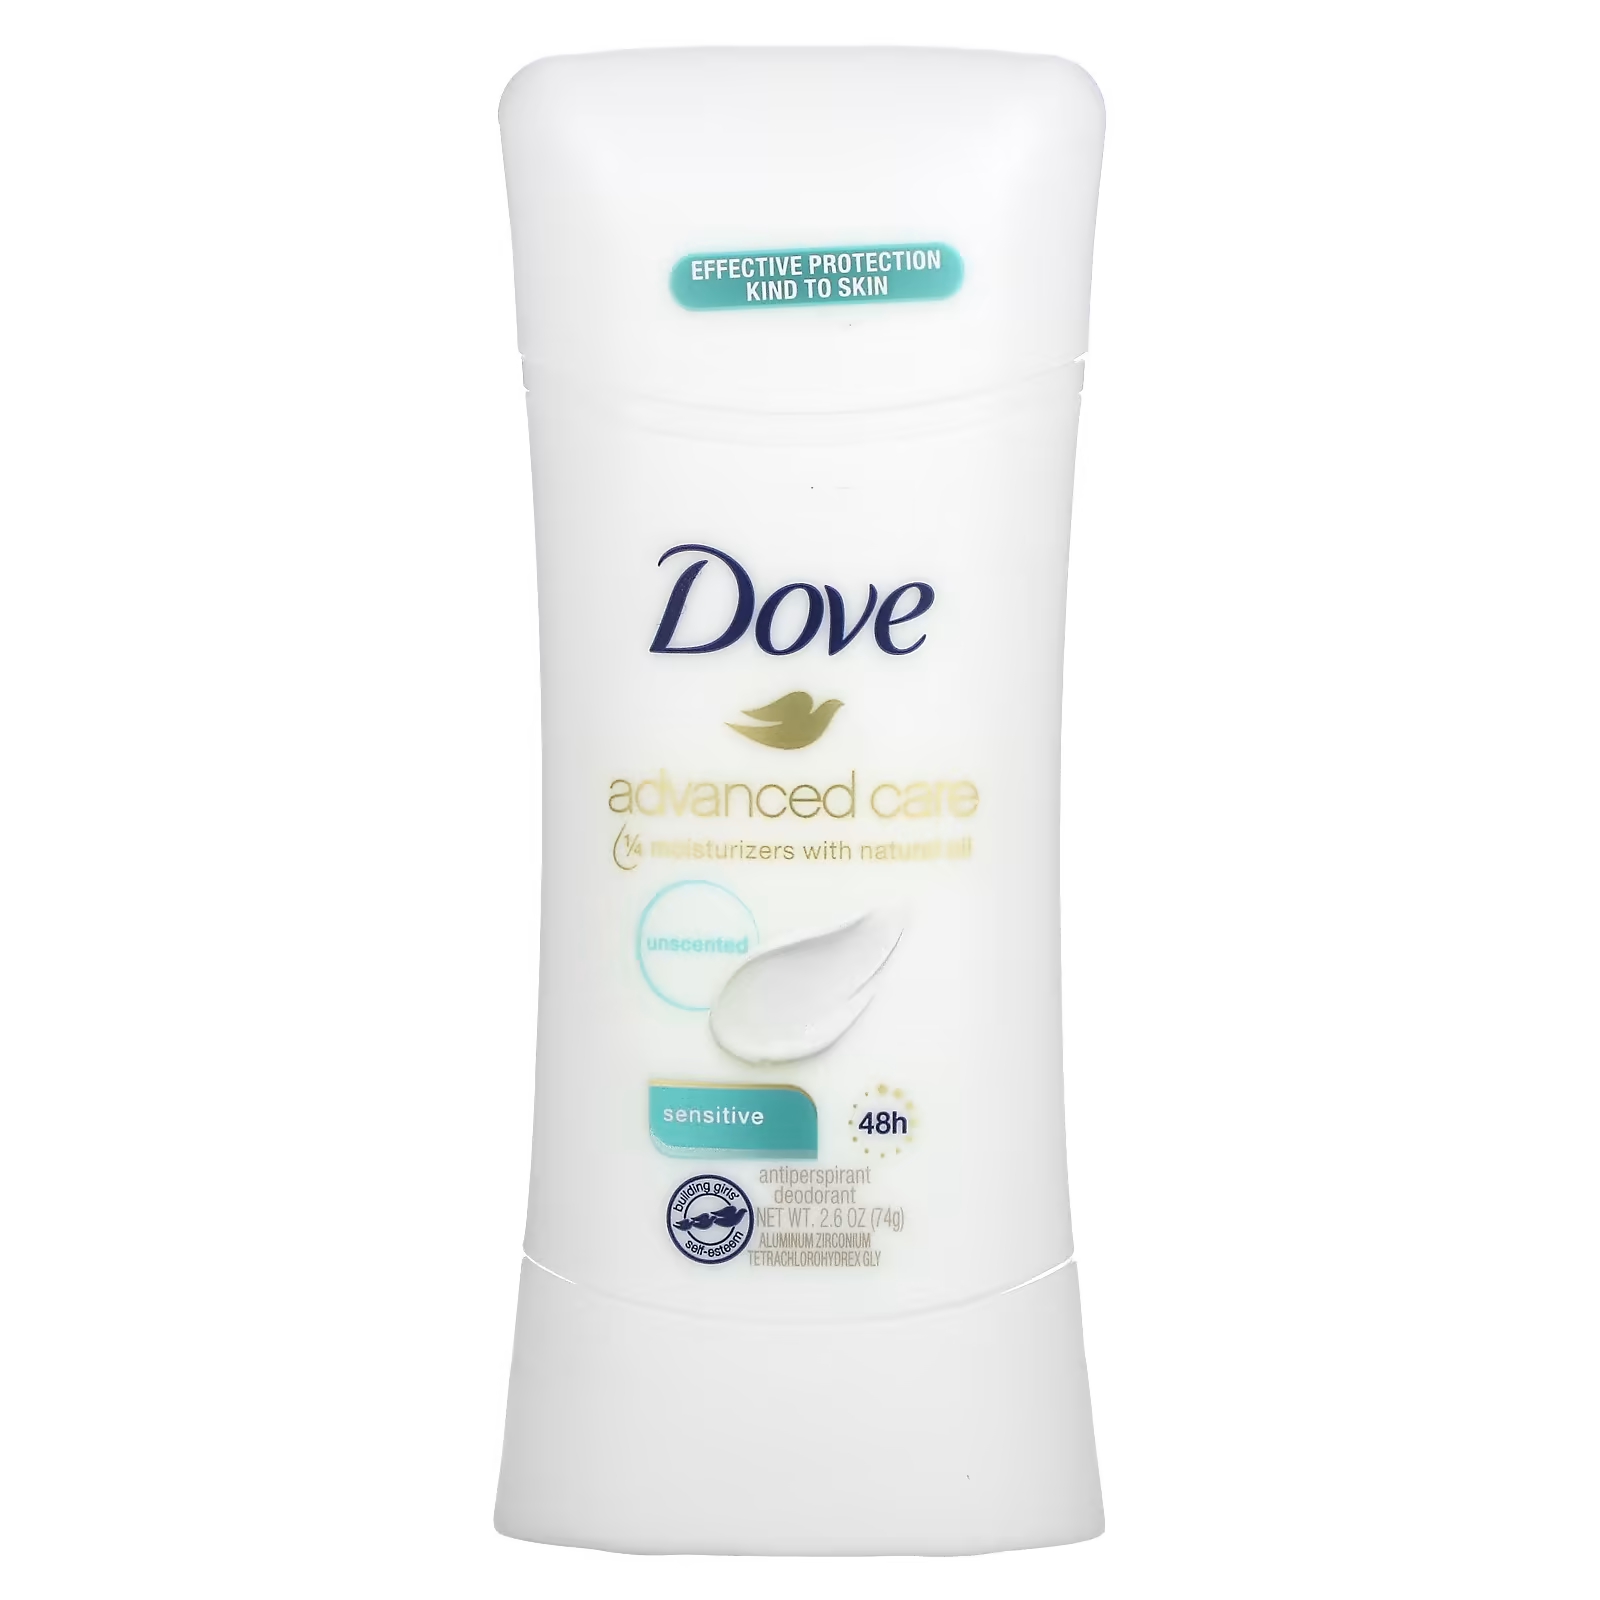 Дезодорант-антиперспирант Dove Advanced Care dove advanced care дезодорант антиперспирант для чувствительной кожи 74 г 2 6 унции